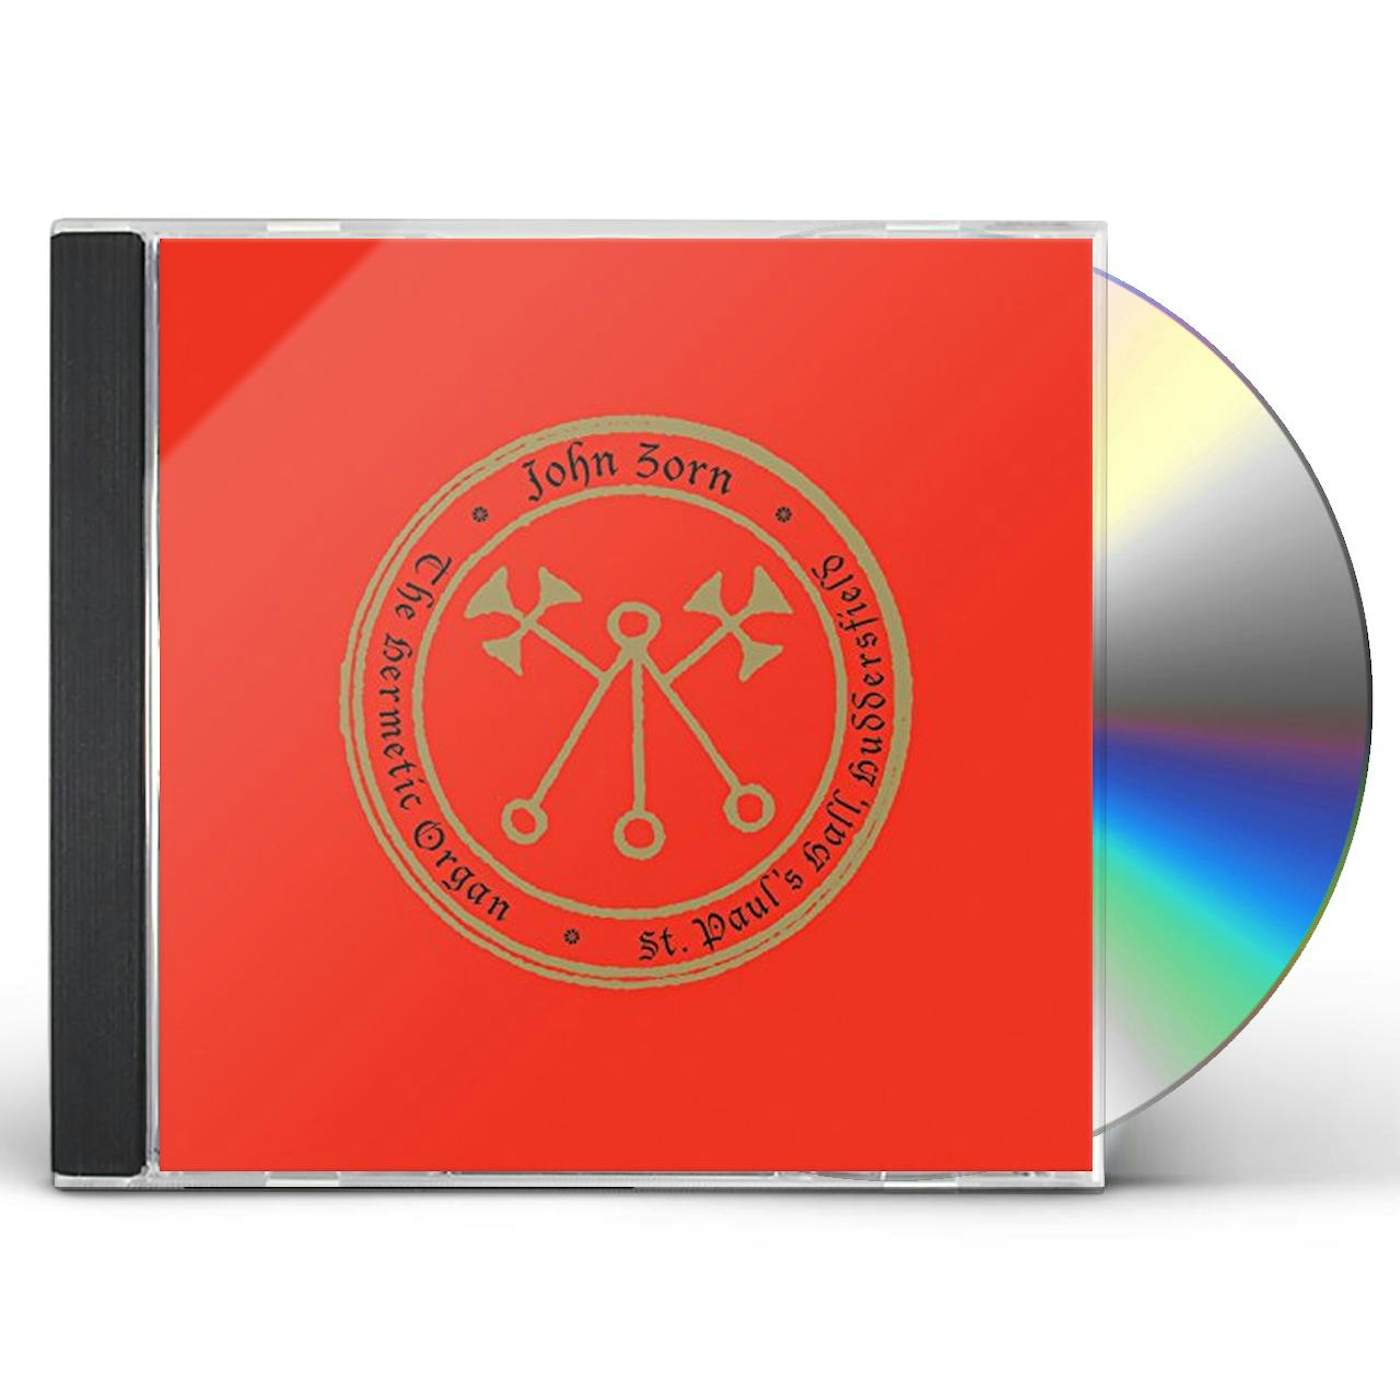 John Zorn HERMETIC ORGAN 3: PAULOS HALL HUDDERSFIELD CD